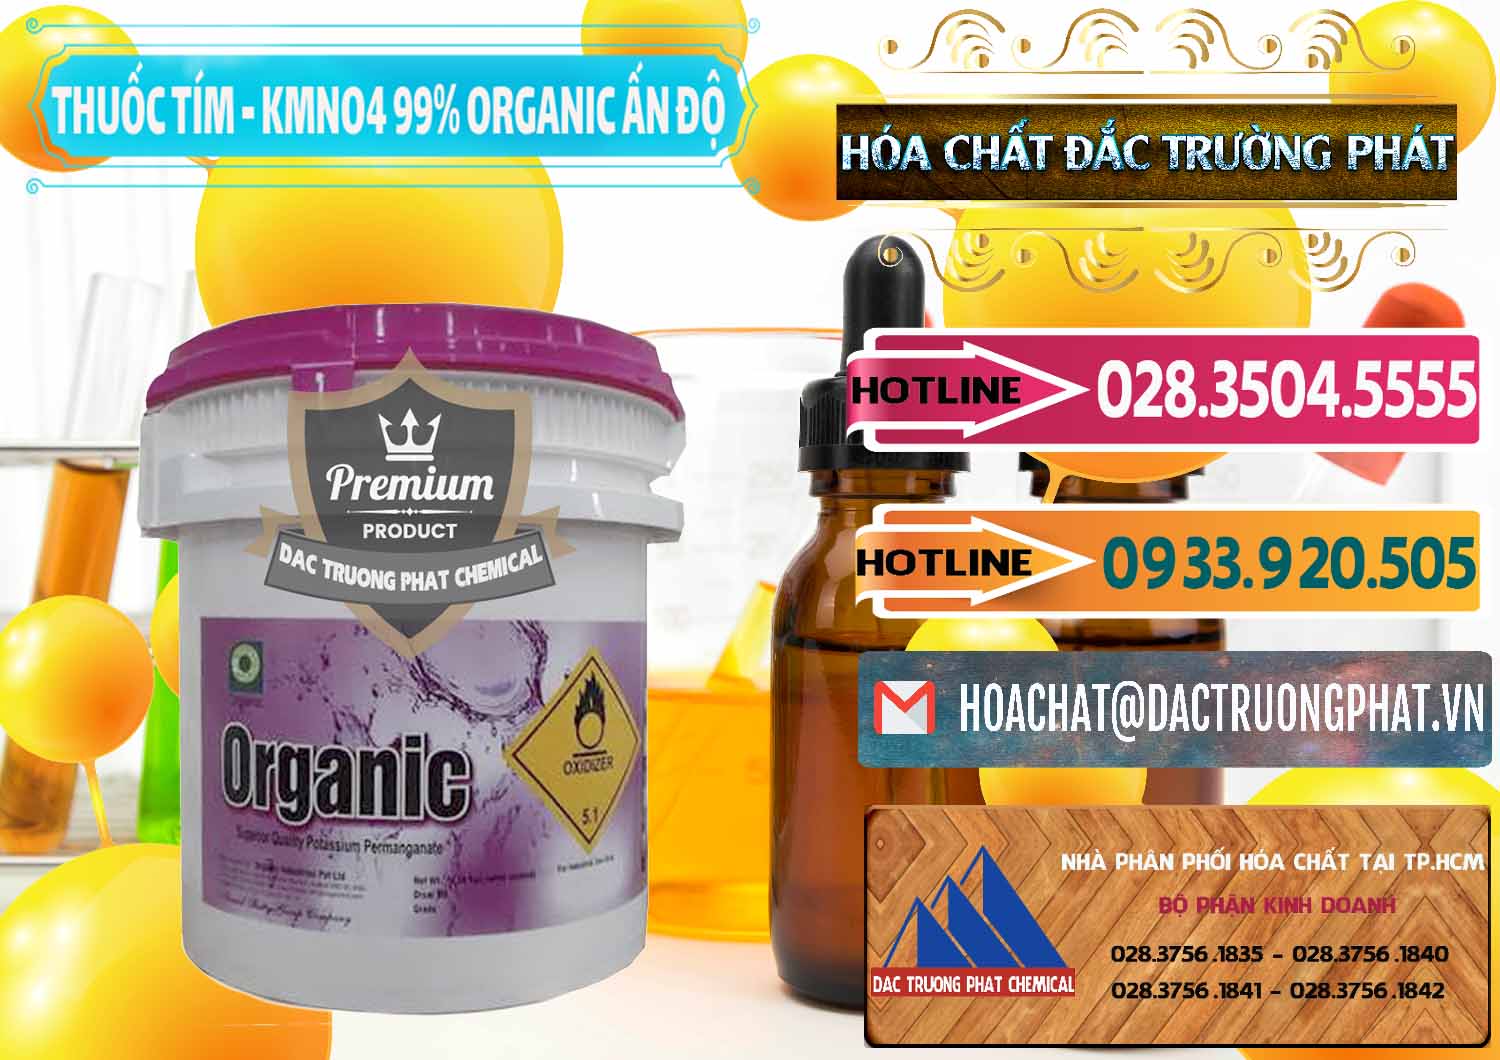 Nơi chuyên bán _ cung cấp Thuốc Tím - KMNO4 99% Organic Ấn Độ India - 0216 - Cty nhập khẩu ( cung cấp ) hóa chất tại TP.HCM - dactruongphat.vn